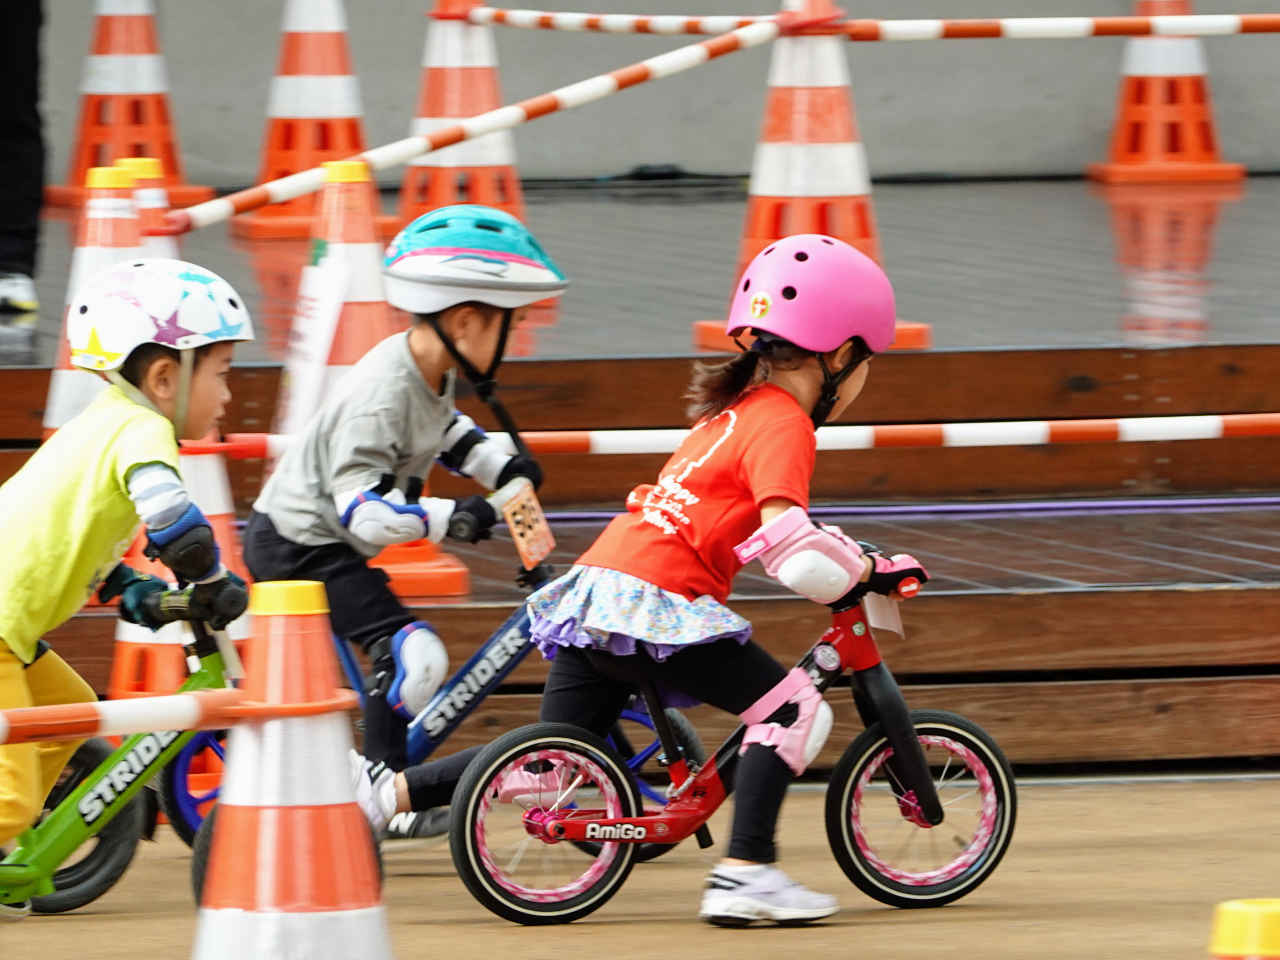 ストライダー大会のジャパンカップキックバイク大会 予選を走る5歳の女の子